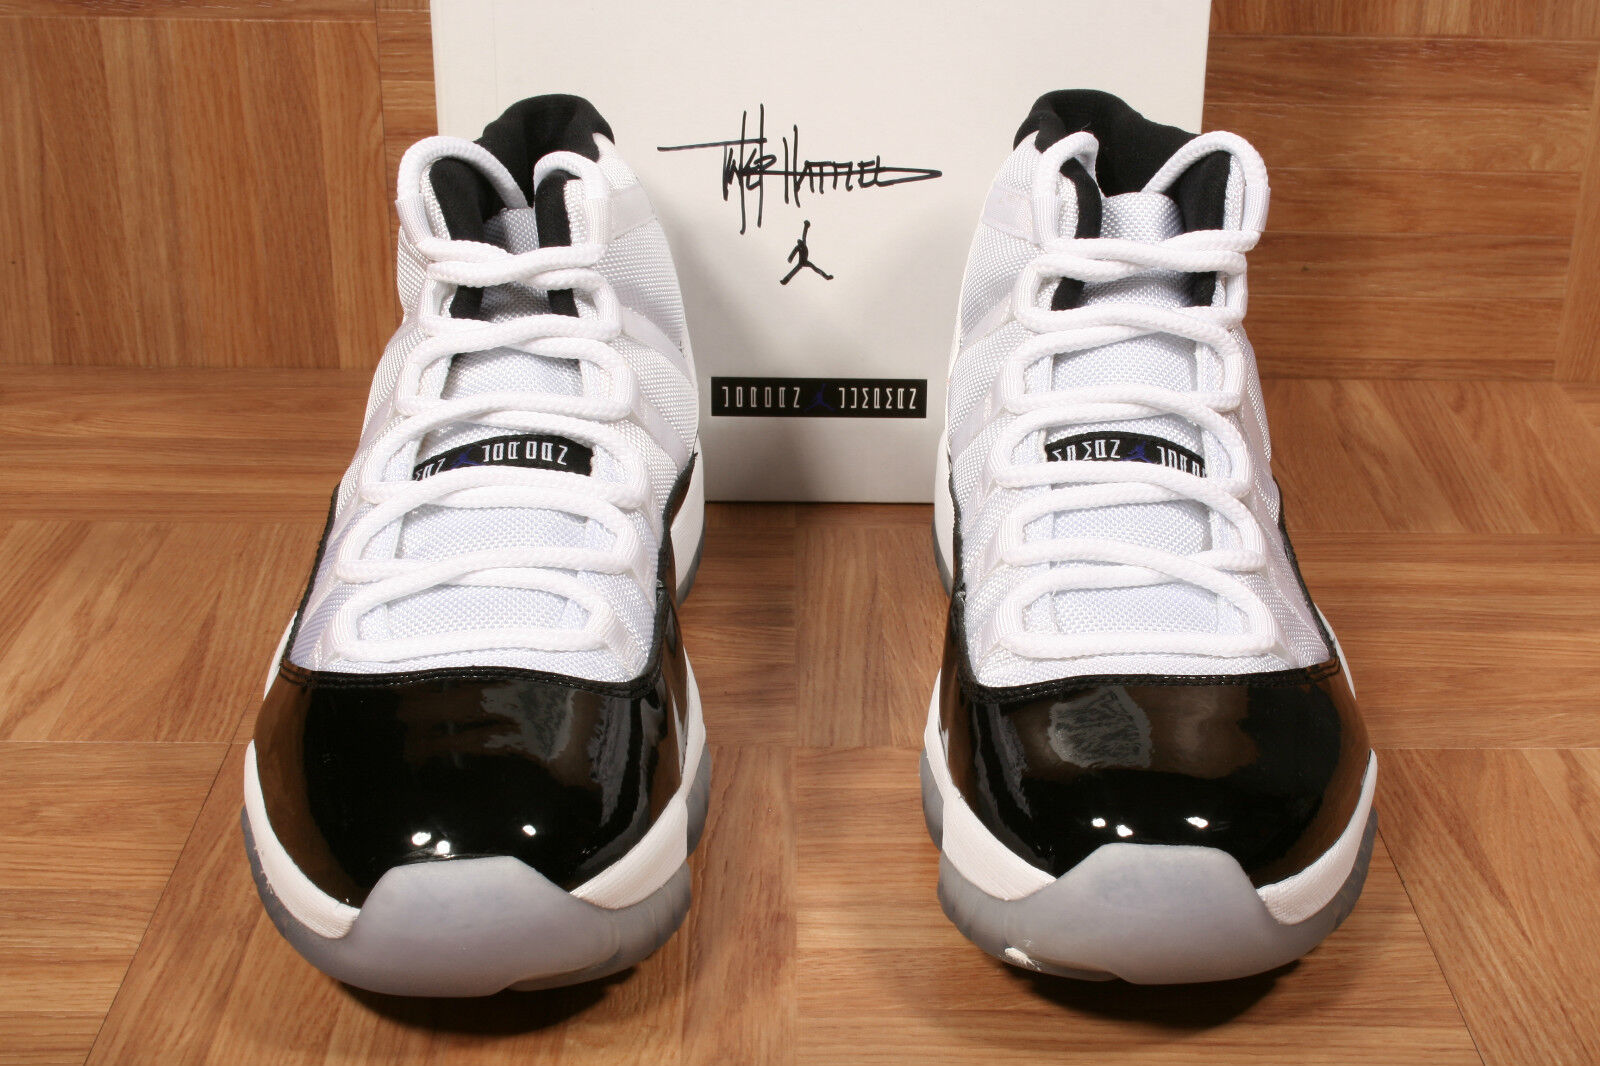 ShoeZeum Tinker Hatfield Autographed Nike Air Jordan XI 11 Retro Shoes Size 11.5